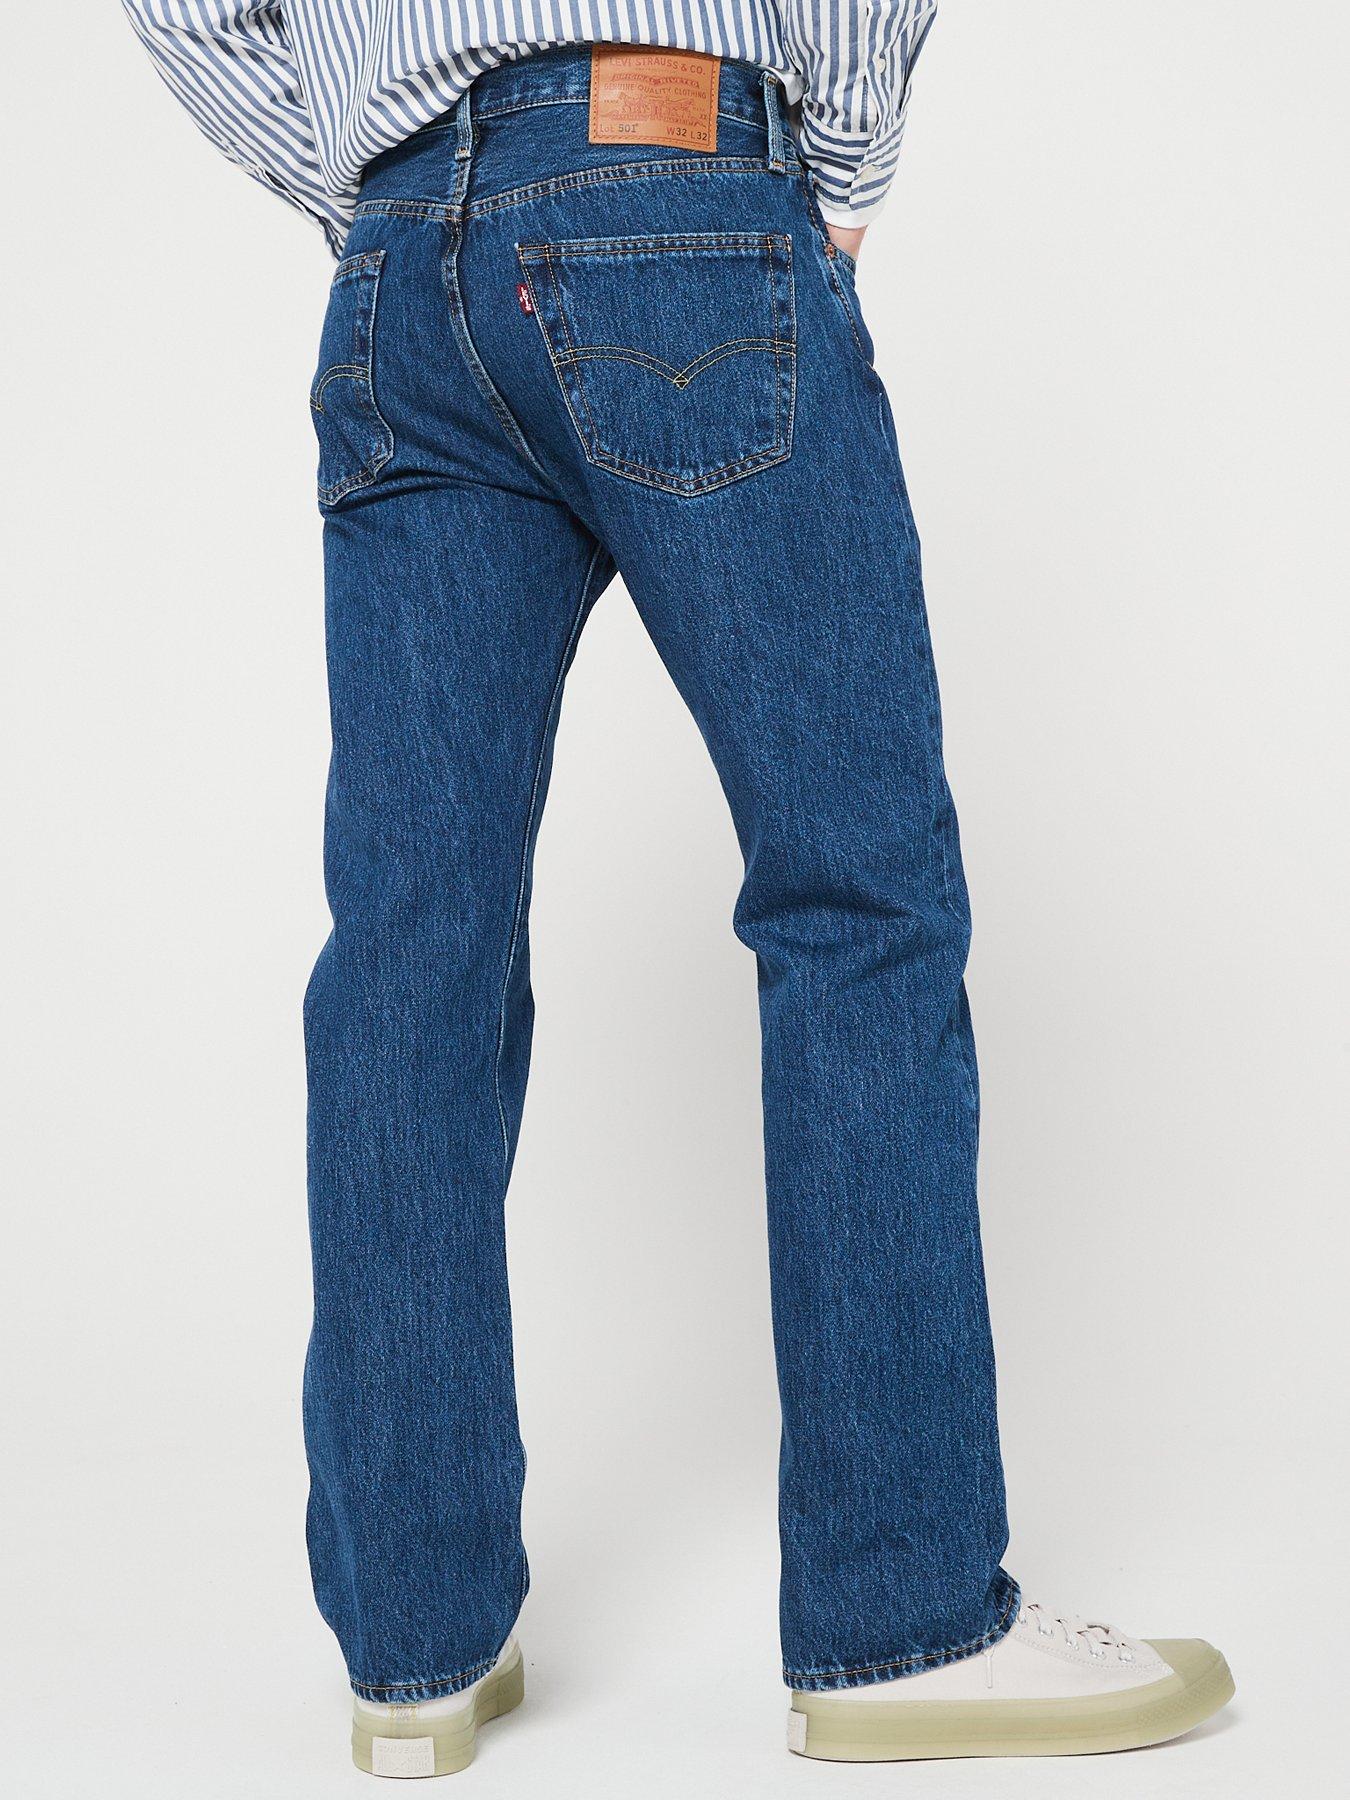 levis 501 stonewash jeans